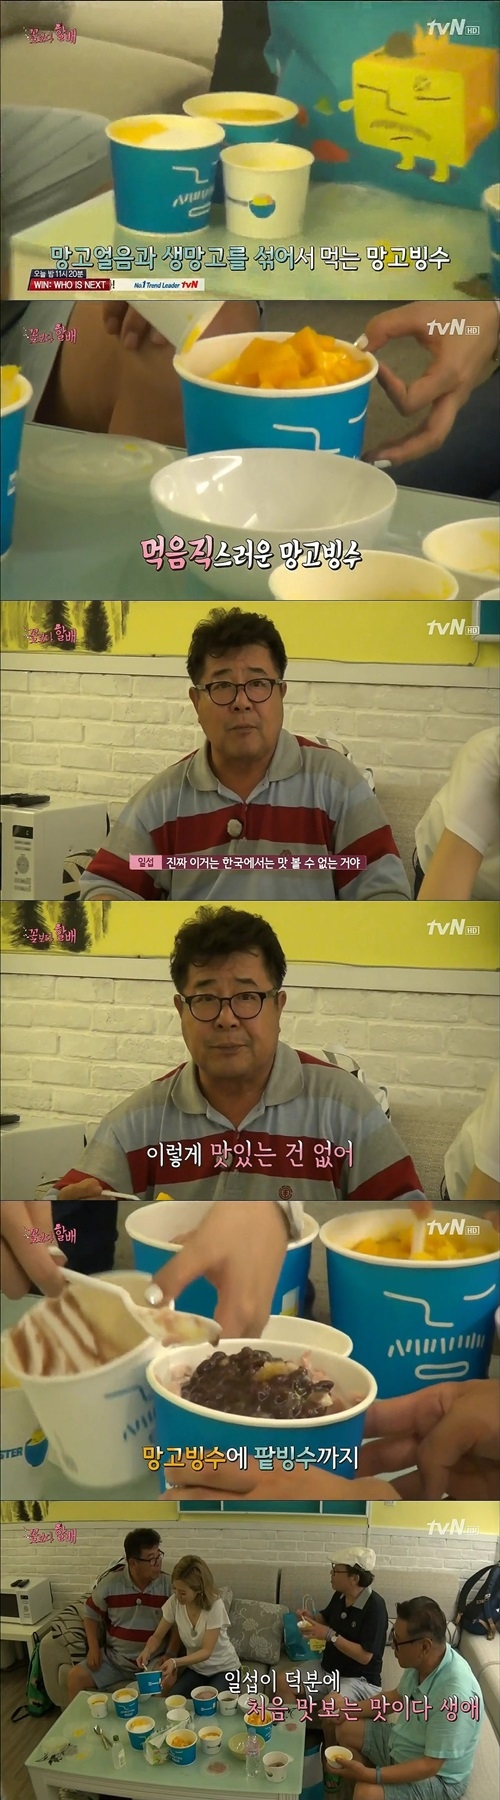 대만 망고빙수. tvN ‘꽃보다 할배’ 화면 캡처